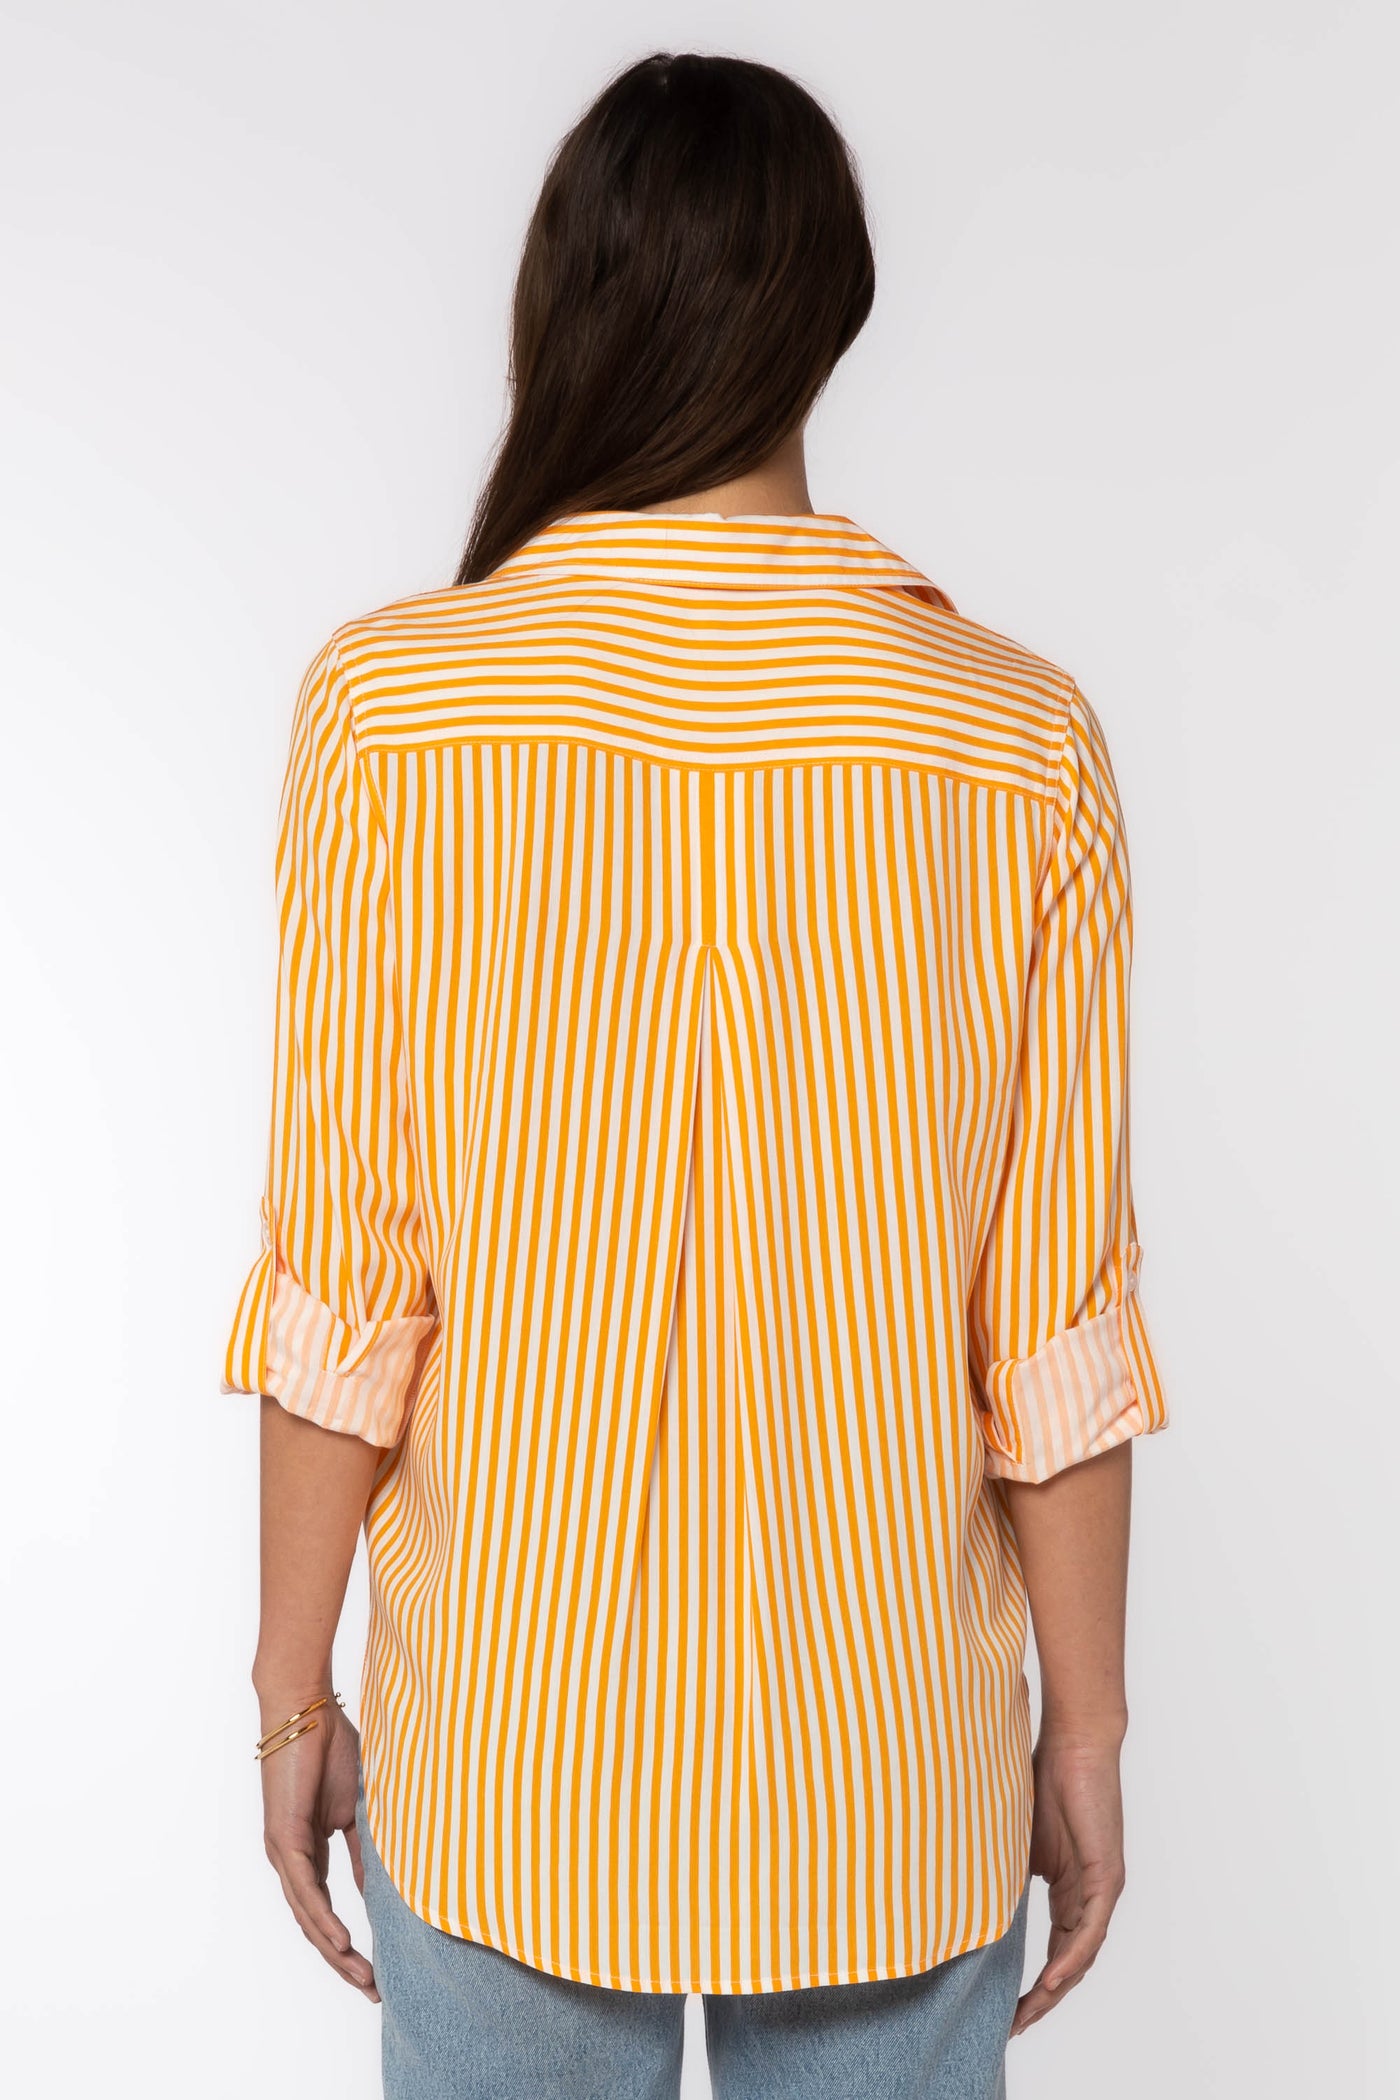 Elisa Shirt - Tops - Velvet Heart Clothing